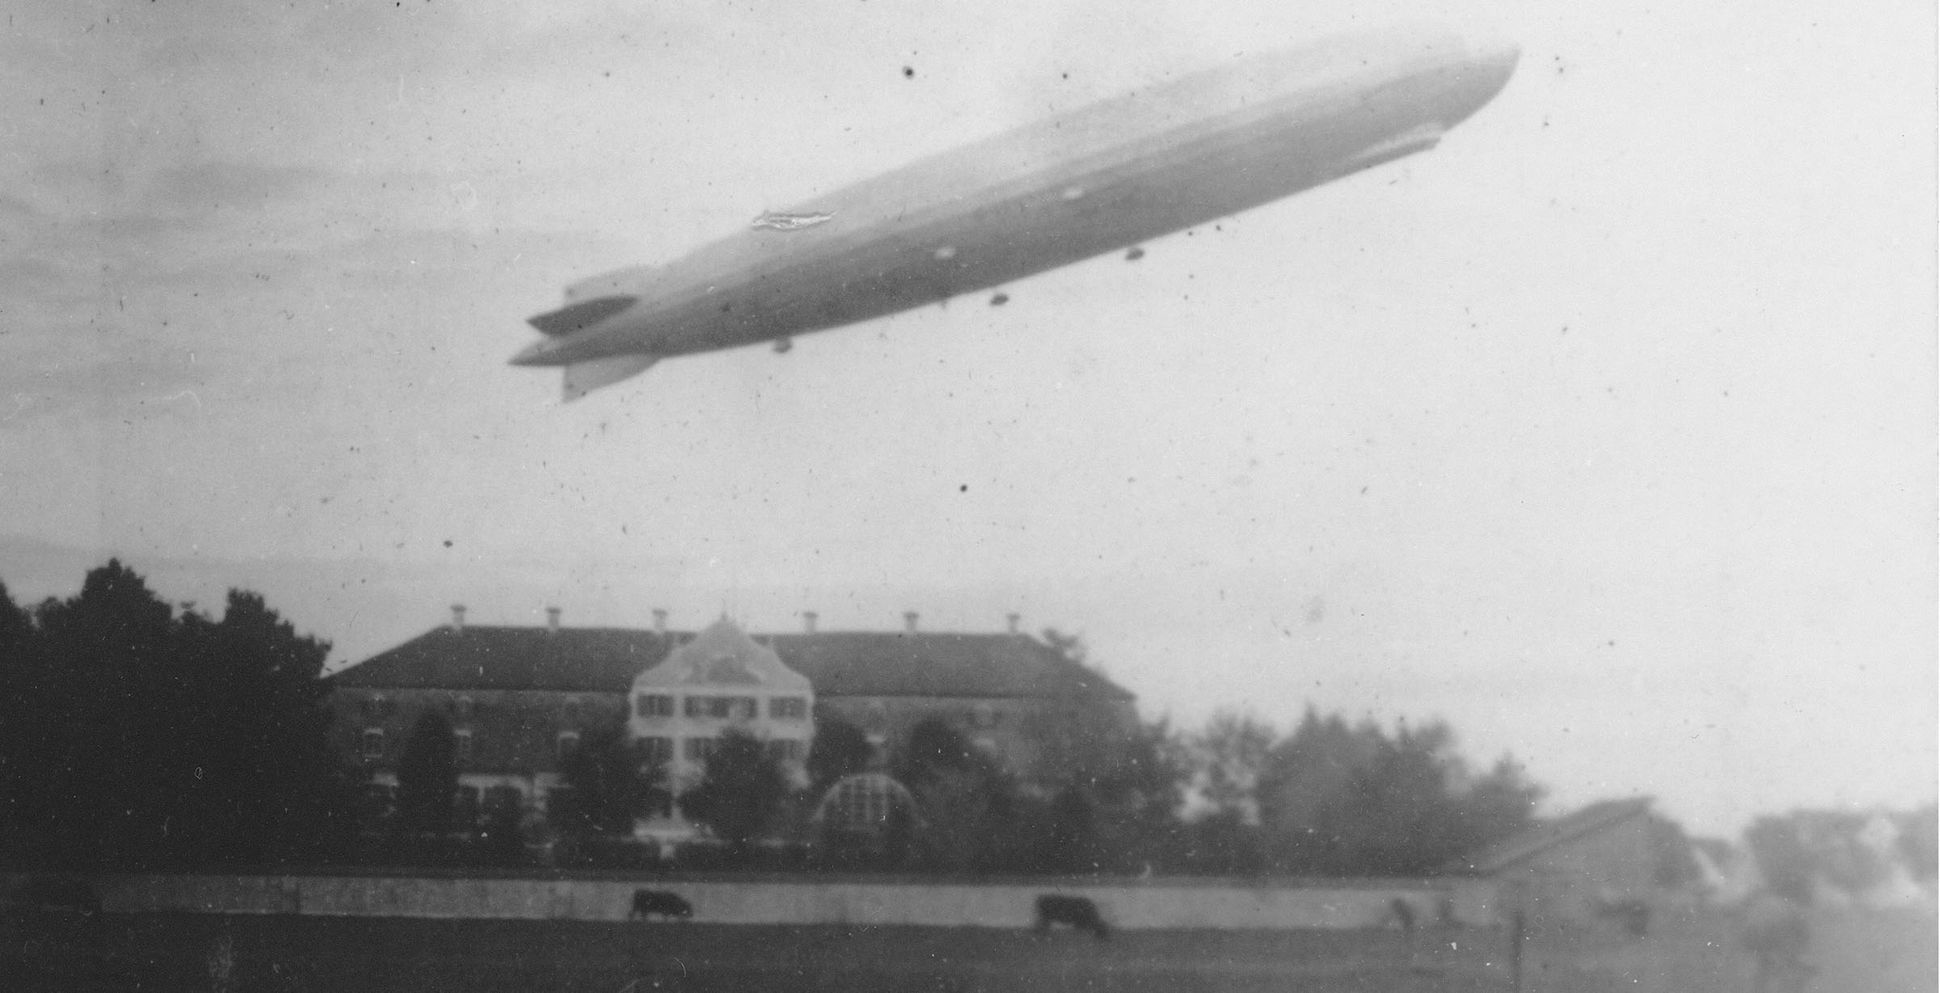 Das Luftschiff LZ 127 Graf Zeppelin macht nach seiner Weltreise einen Begrüßungsflug über Schloss Lautrach